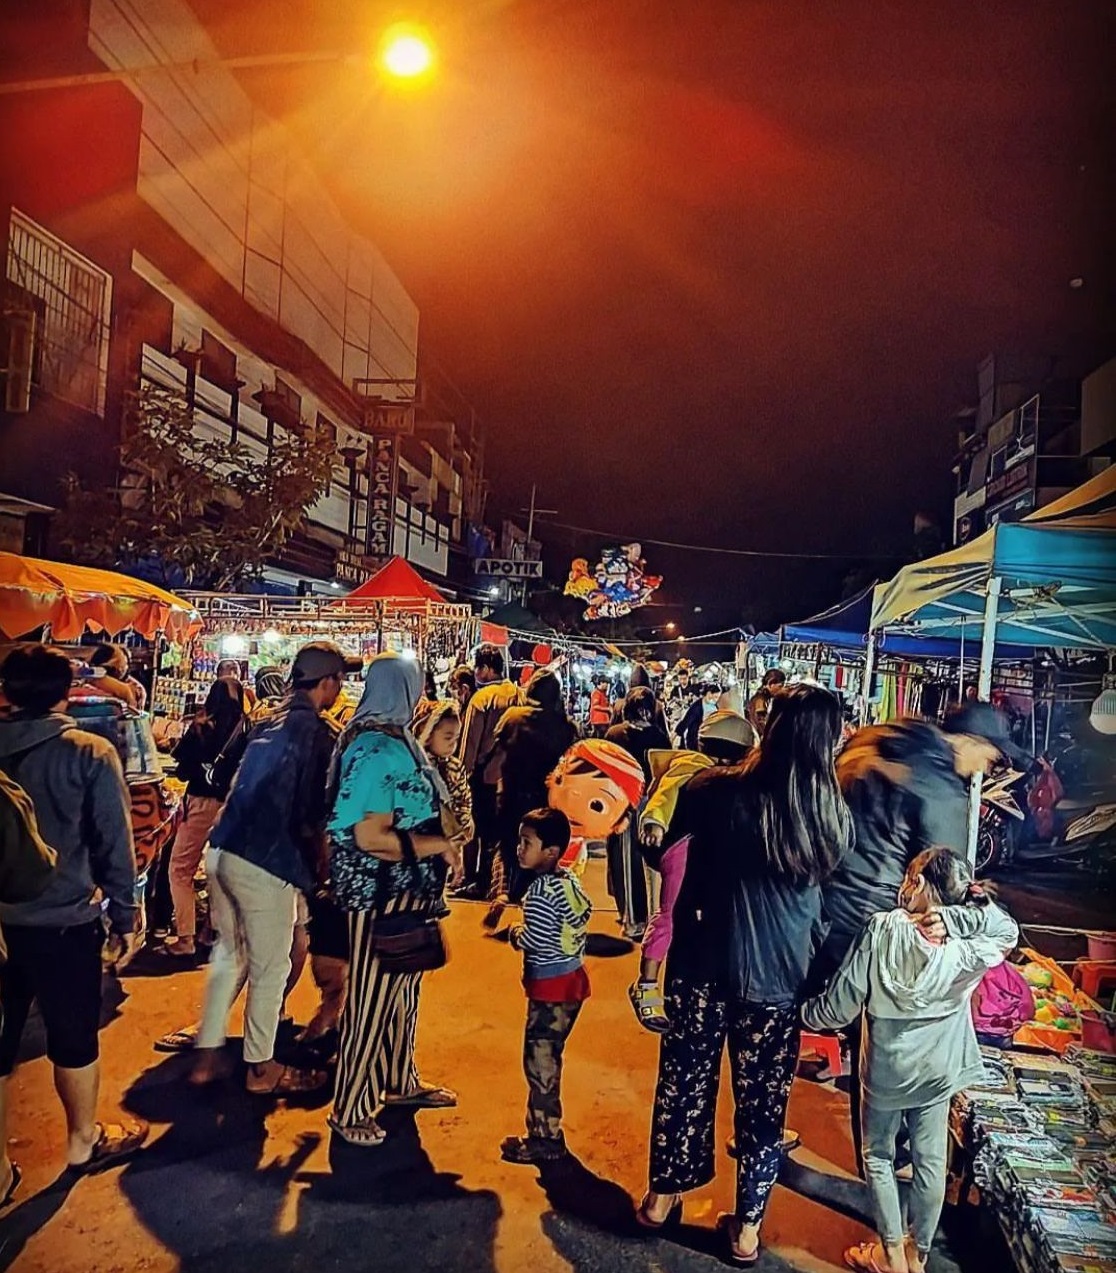 Suasana night market Pasar Besar Kota Malang yang mulai menggeliat.